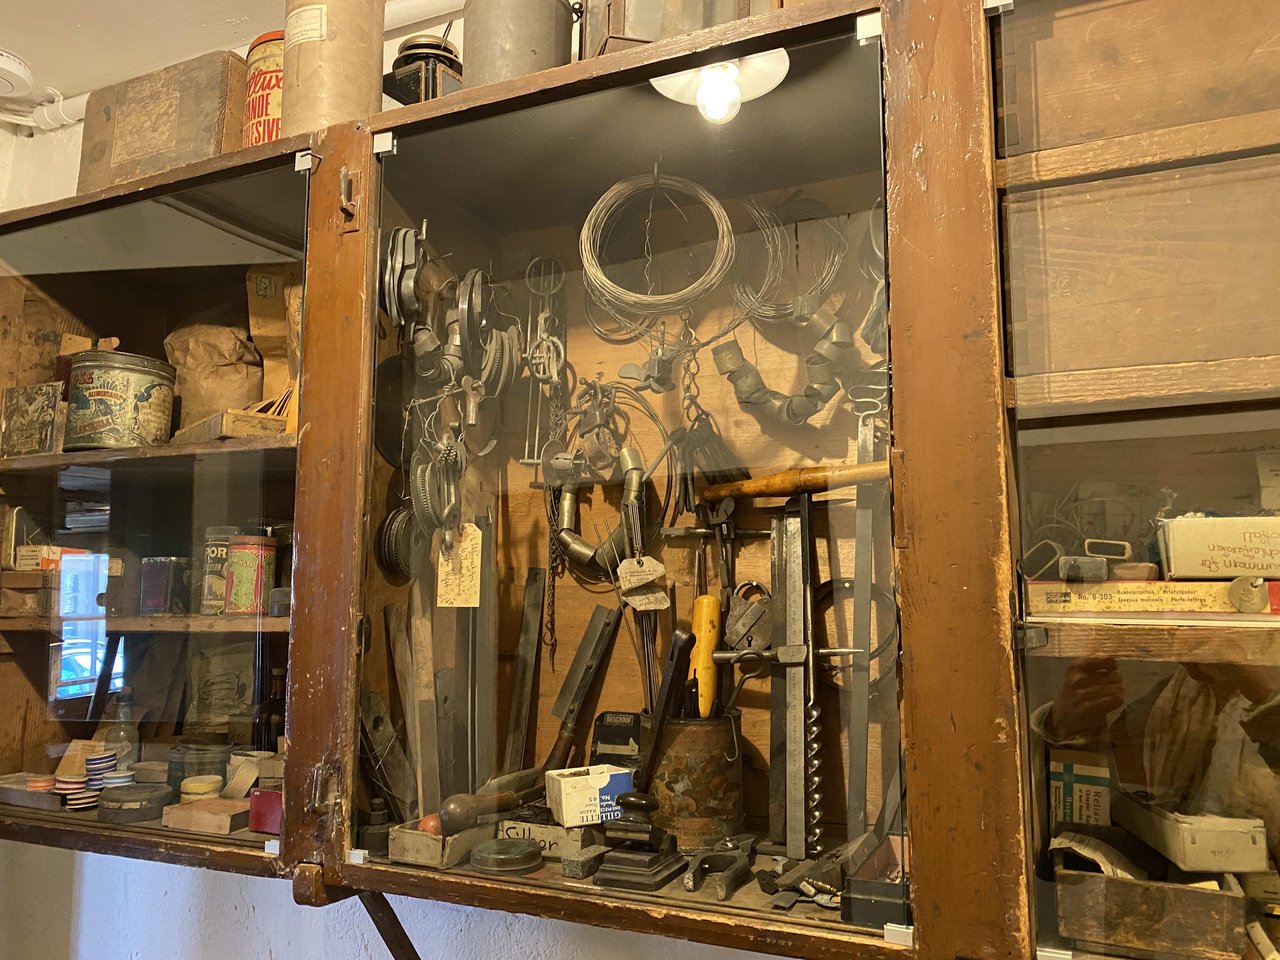 In den Räumlichkeiten der alten Klötzli-Schmiede sind Werkzeug, Material und Möbelstücke aus den letzten 175 Jahren erhalten geblieben. 